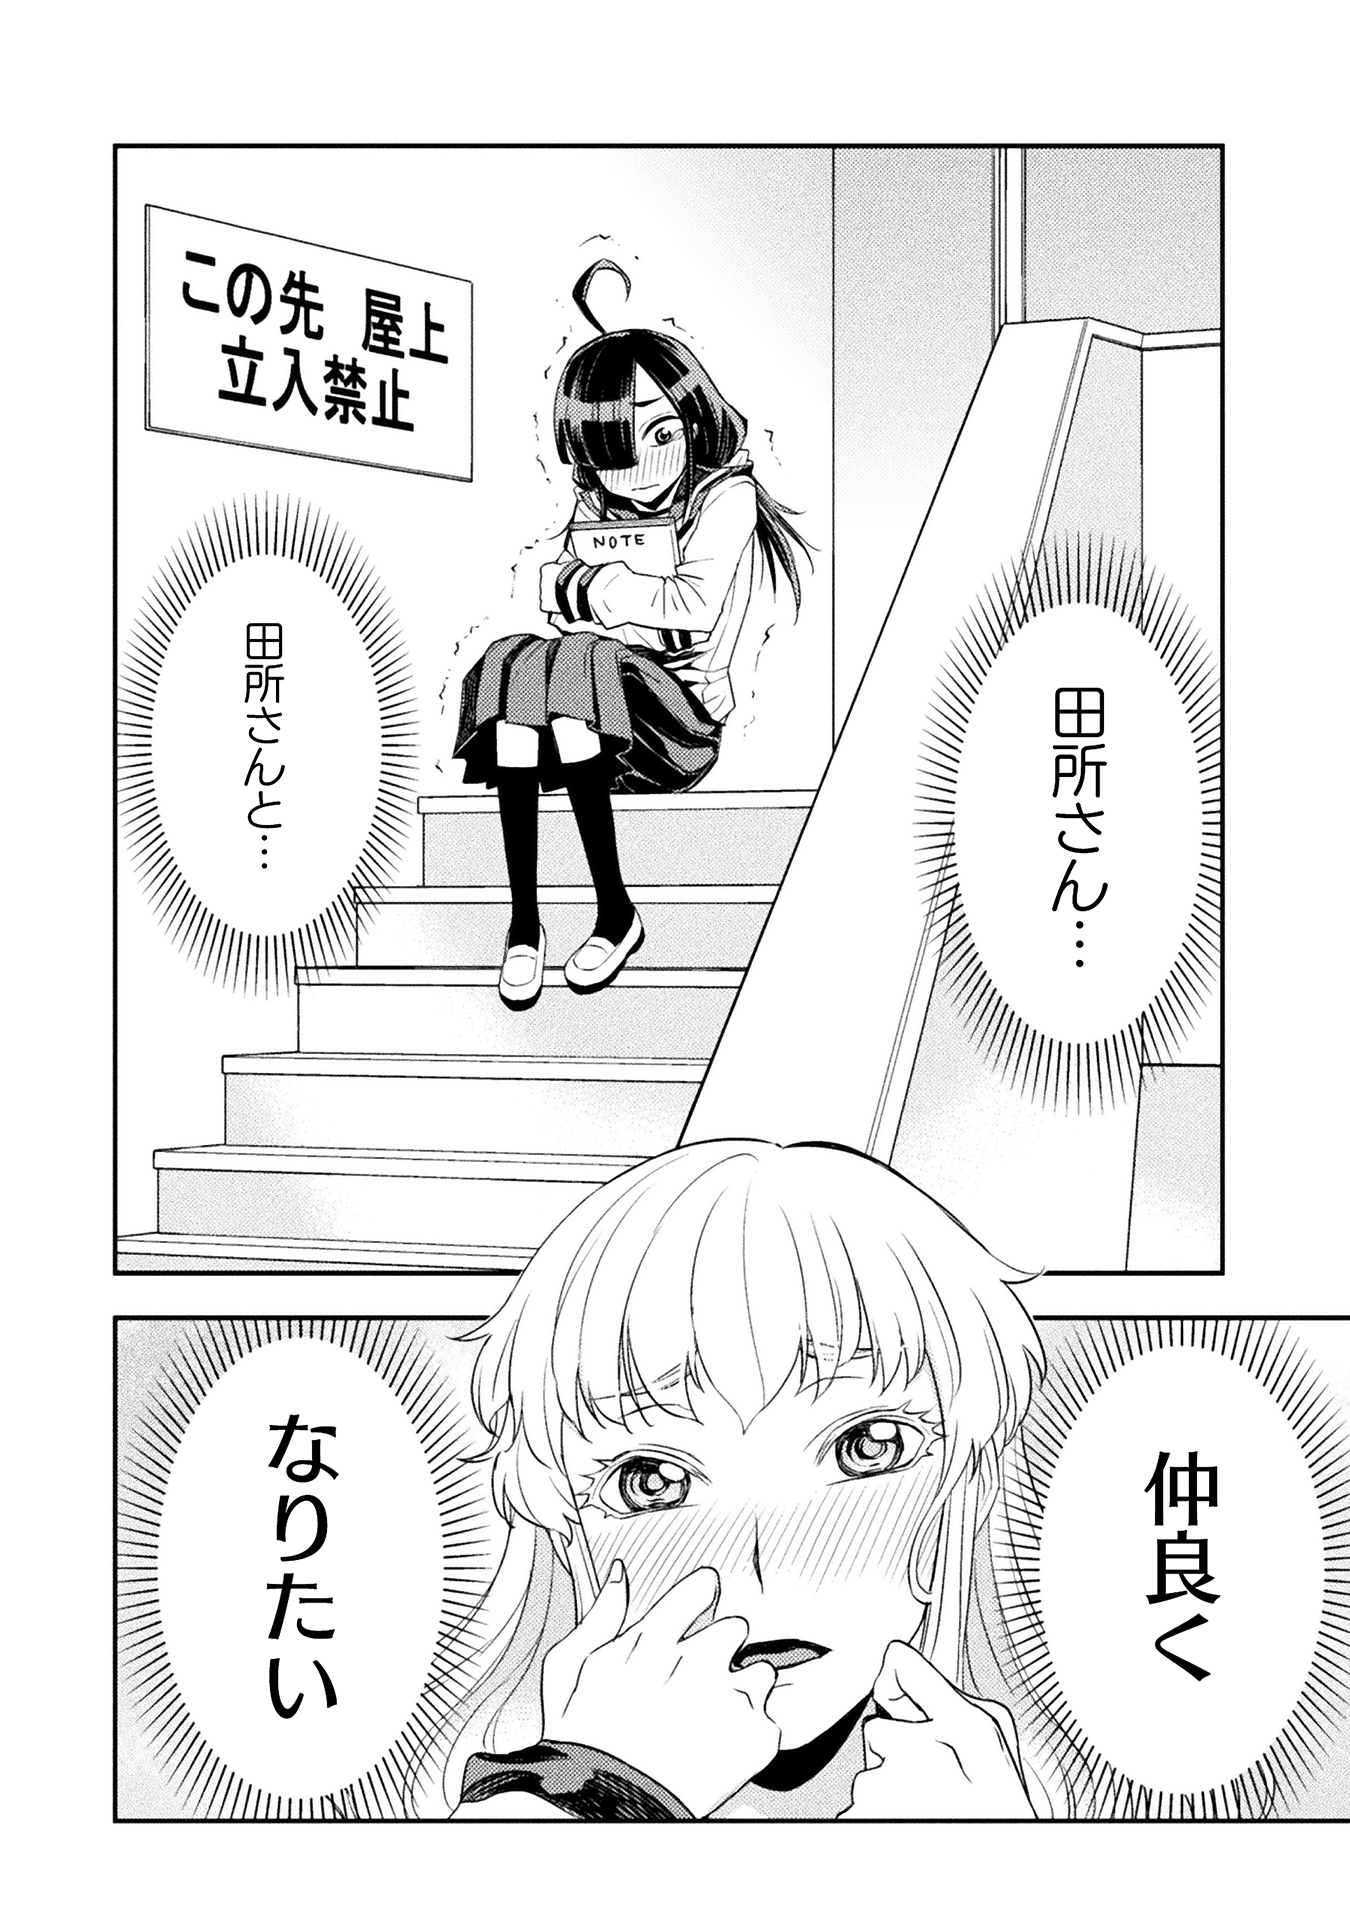 漫画「田所さん」が「アニメ化してほしいマンガランキング」にノミネート